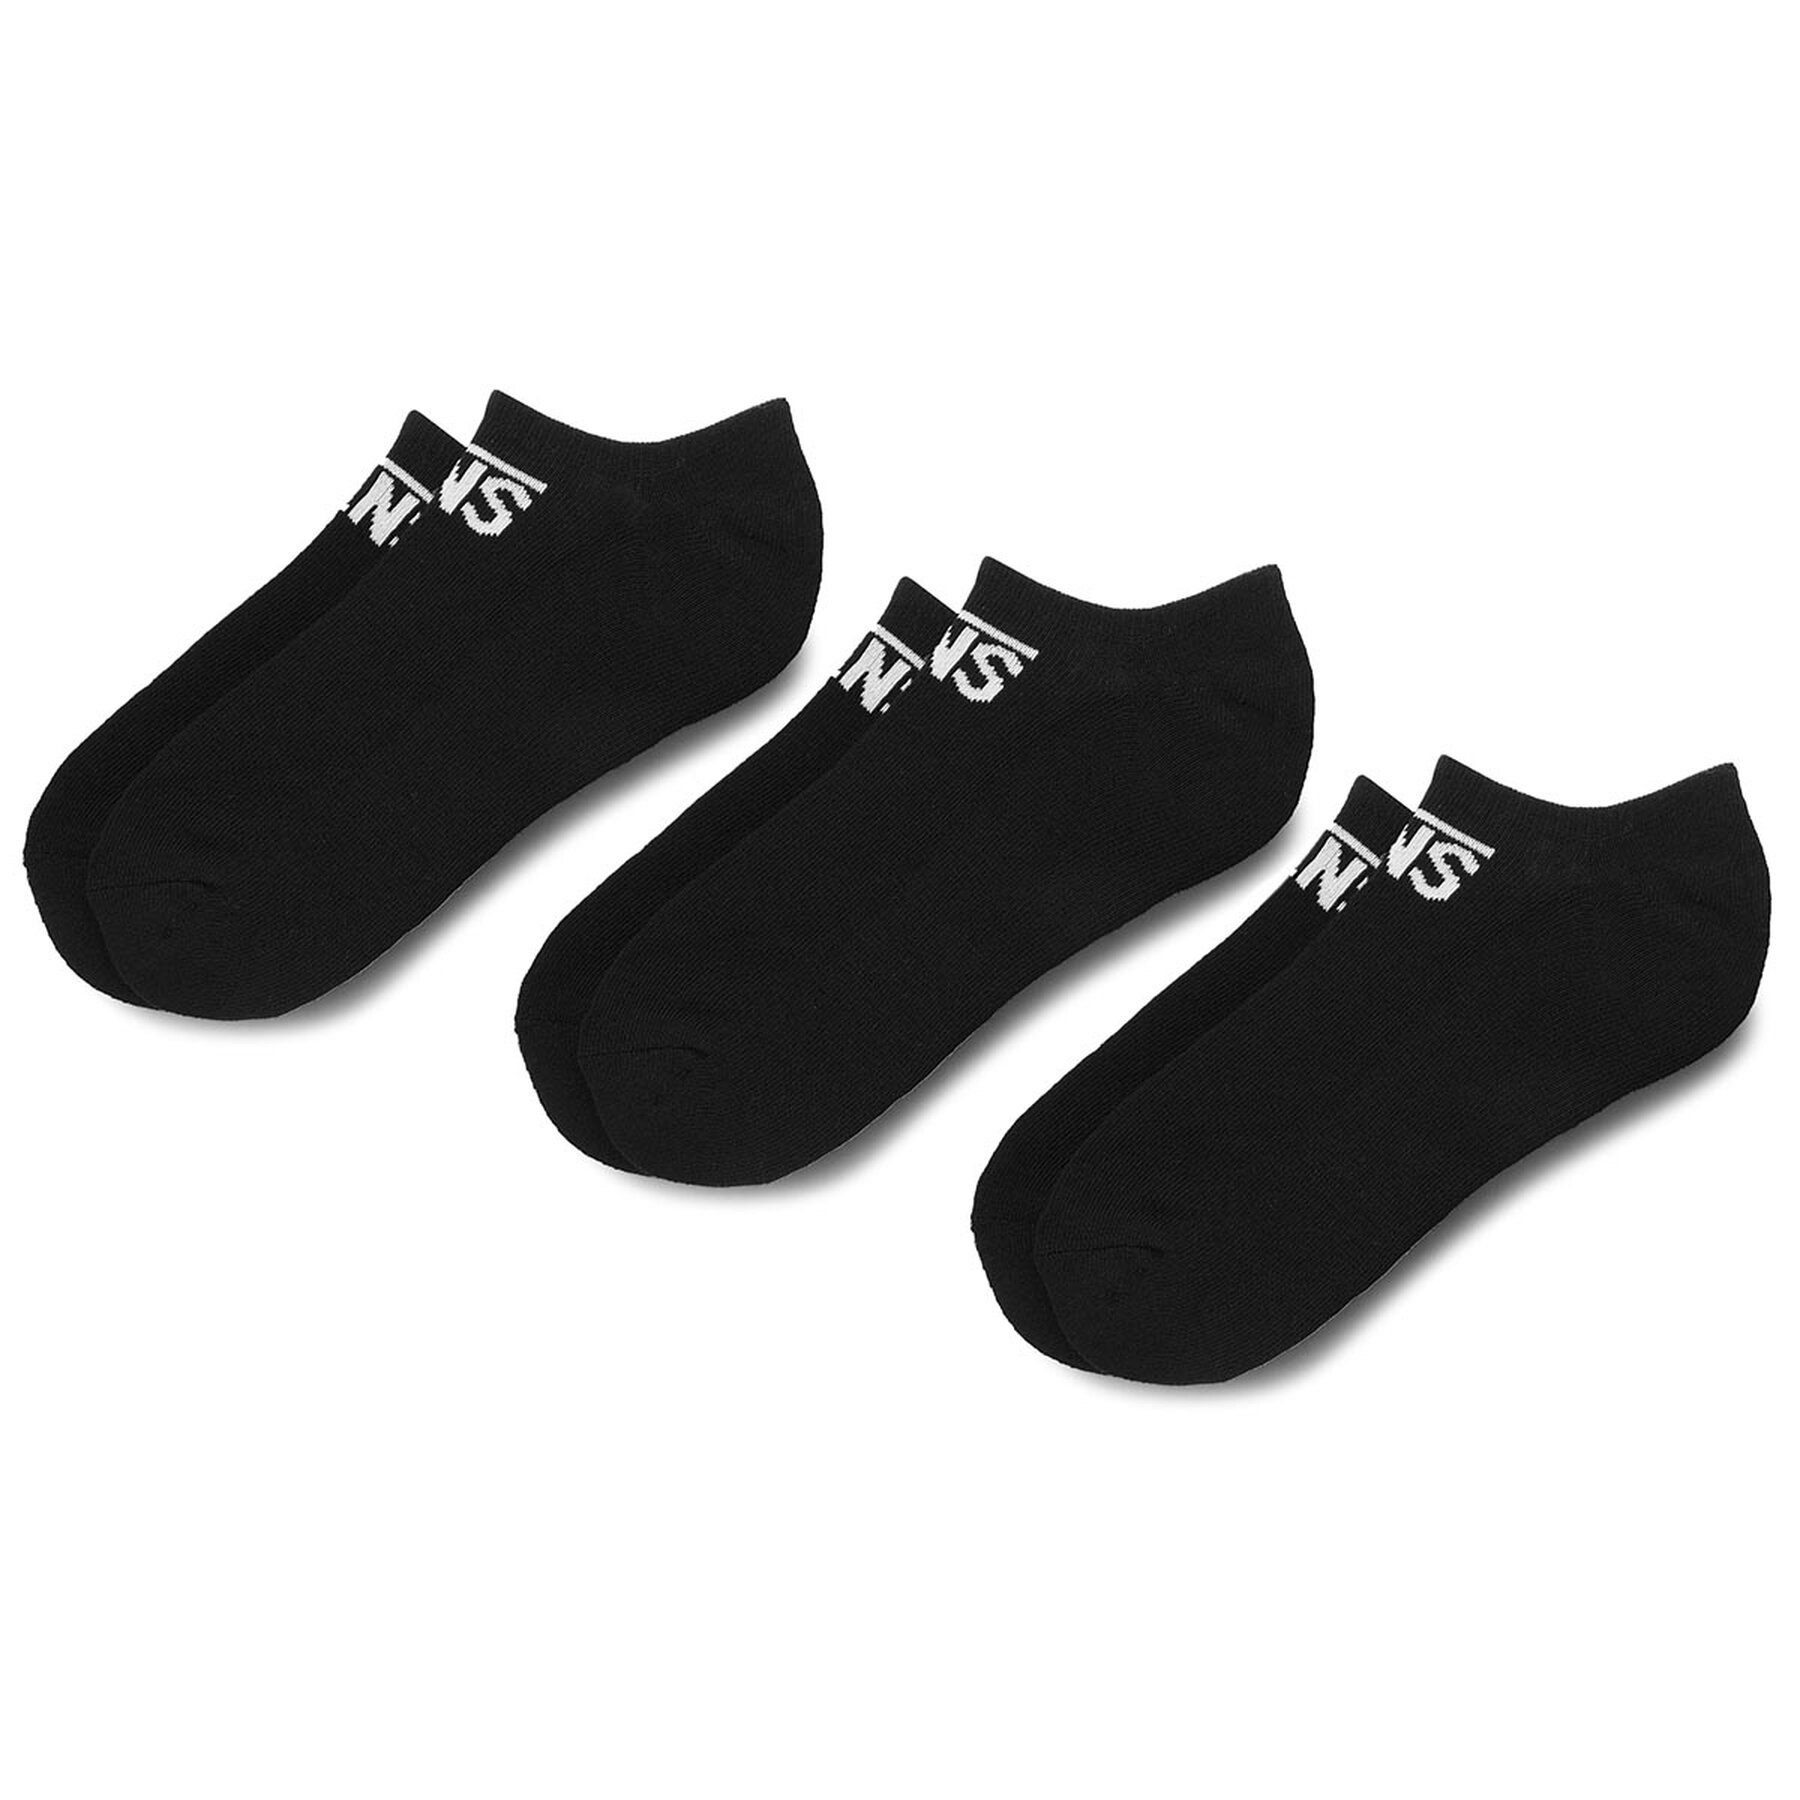 Vans Classic Kick Socks (3 Pack) - Medias y calcetines